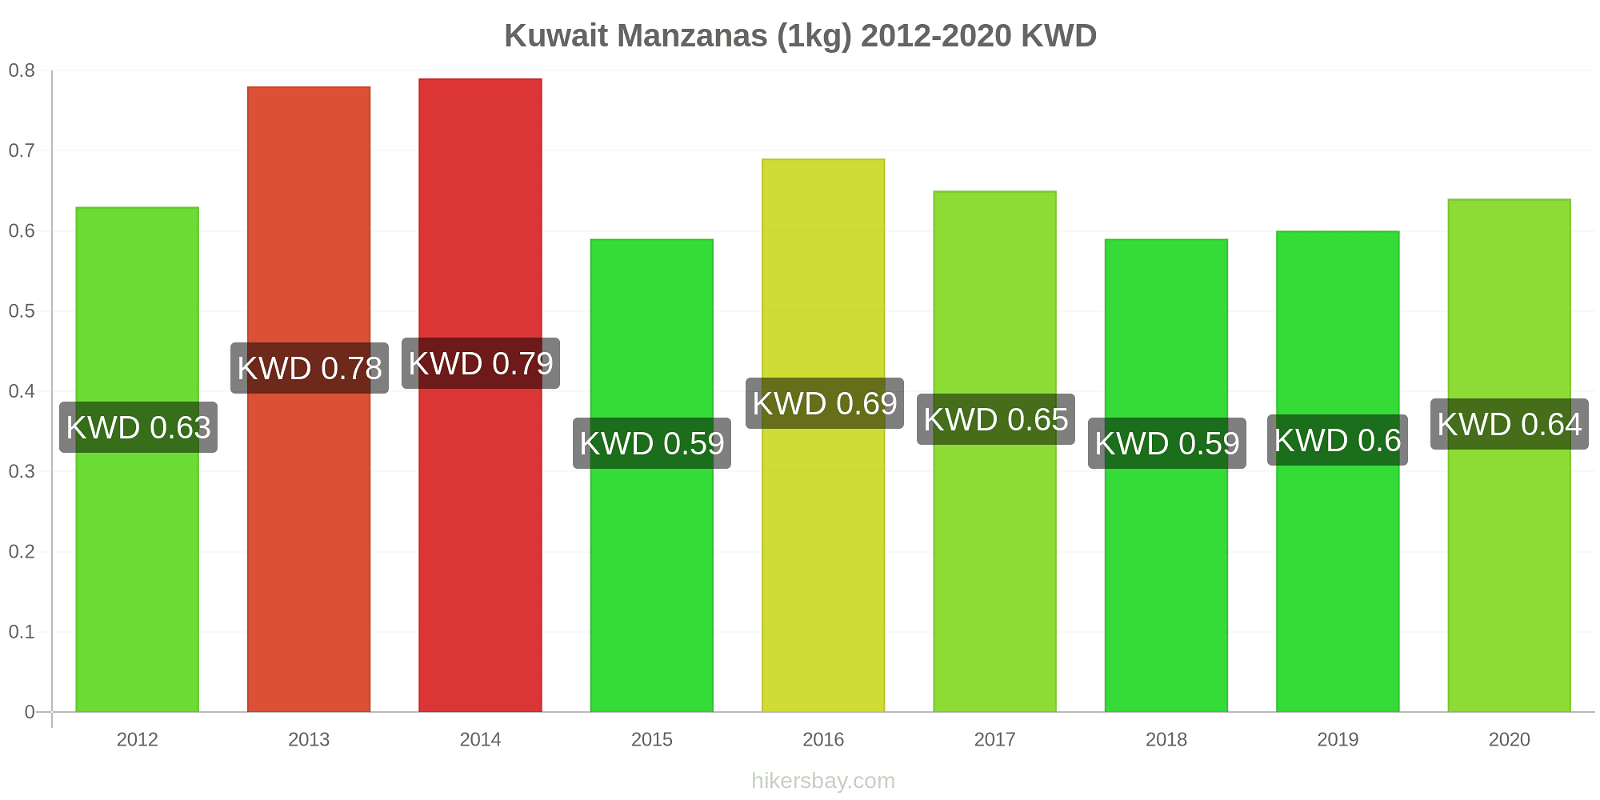 Kuwait cambios de precios Manzanas (1kg) hikersbay.com